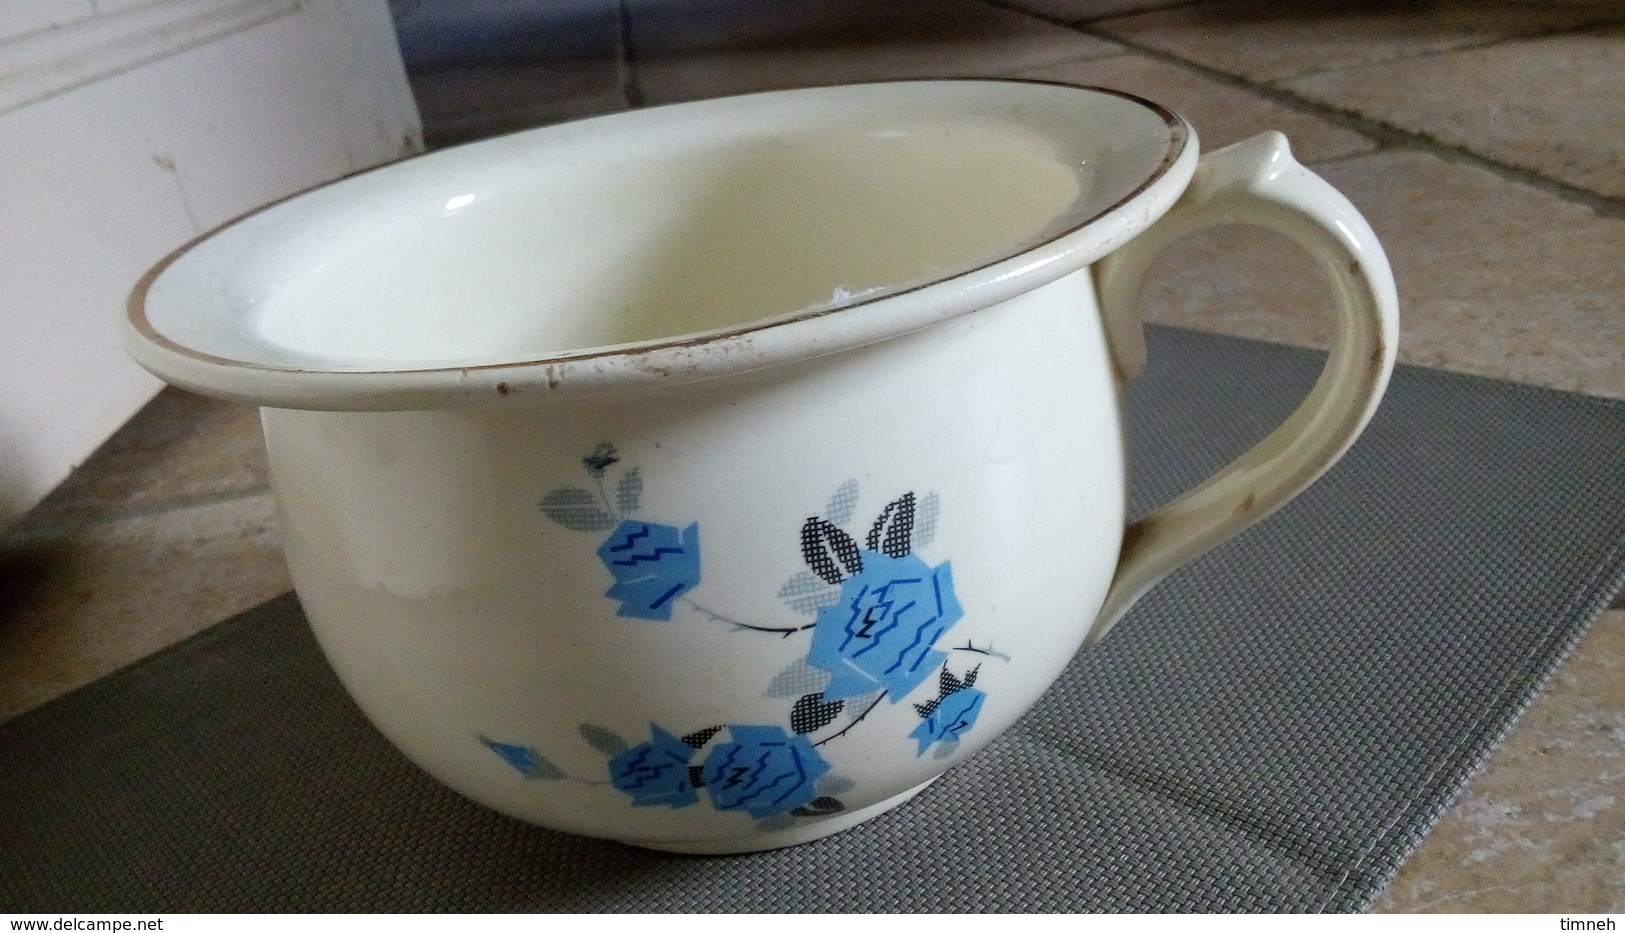 RARE - Luneville Lorraine - authentique pot de chambre faïence opaque - decor fleurs bleues - France ca.1940